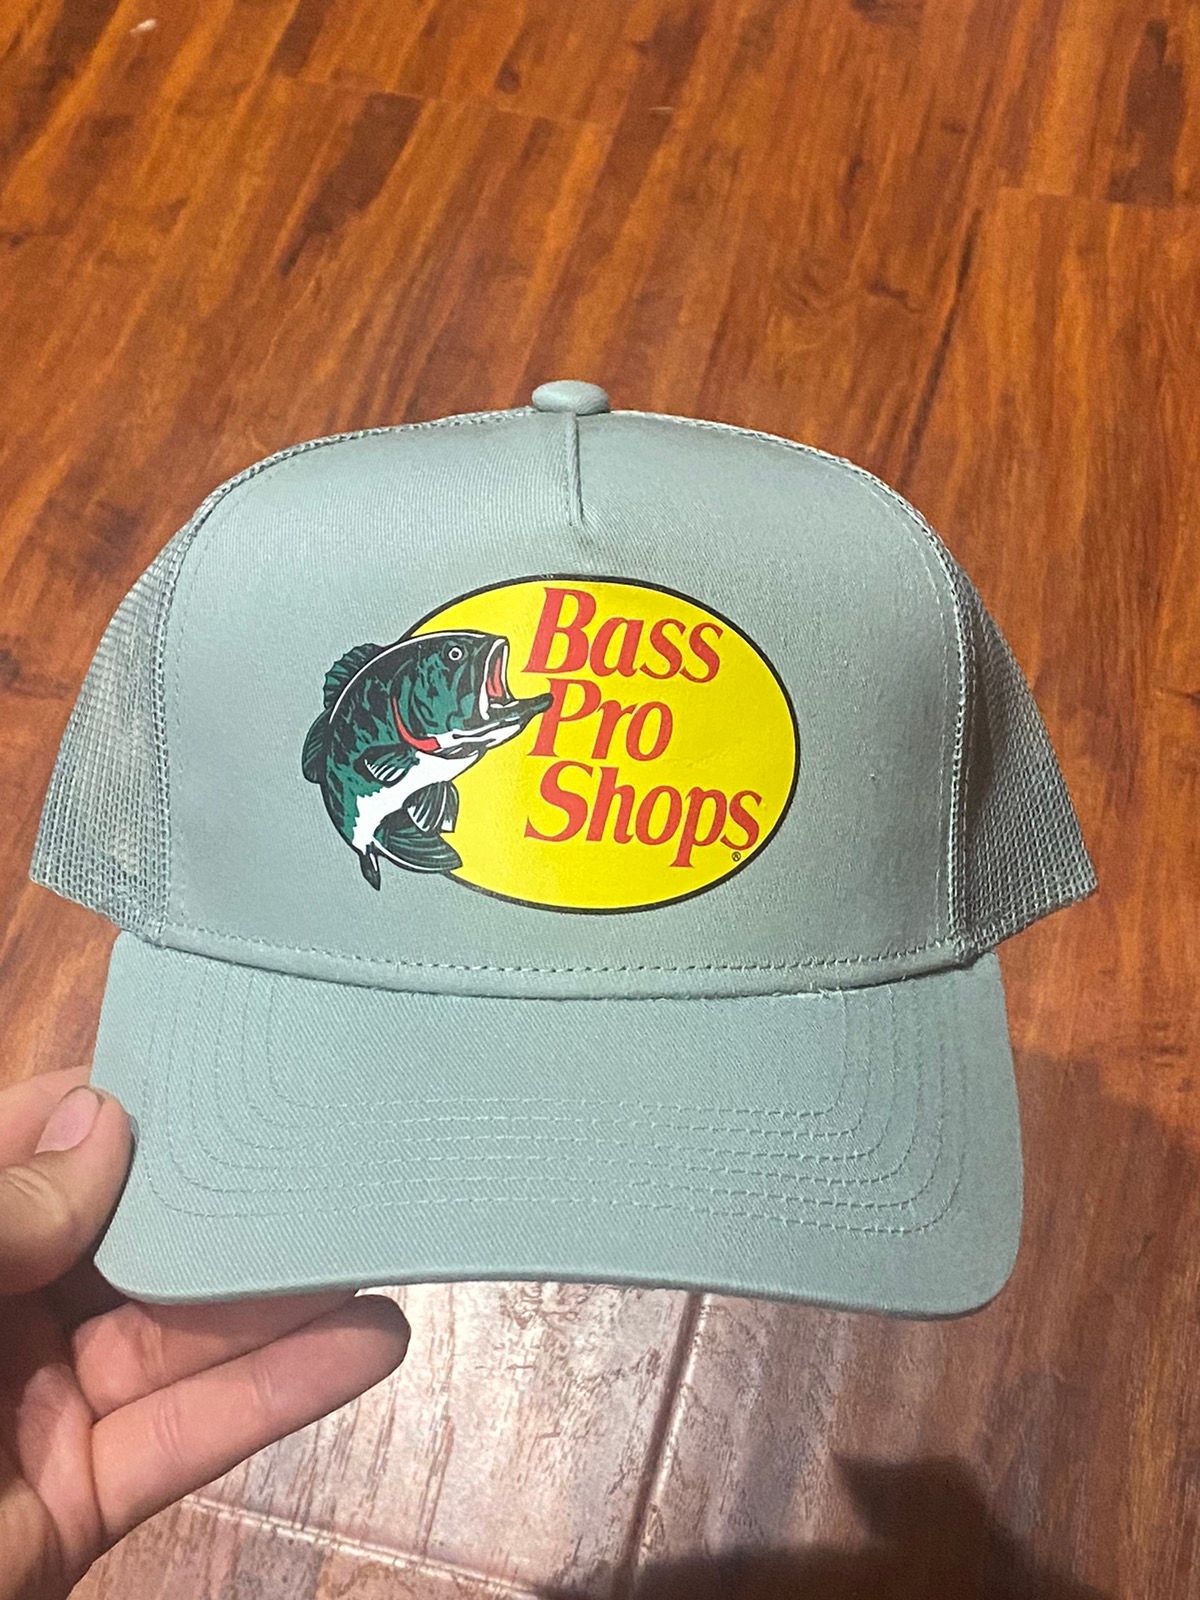 Bass Pro Shops x Hat Bass Pro Shop, Trucker, Hat Color Sage Green, Men's